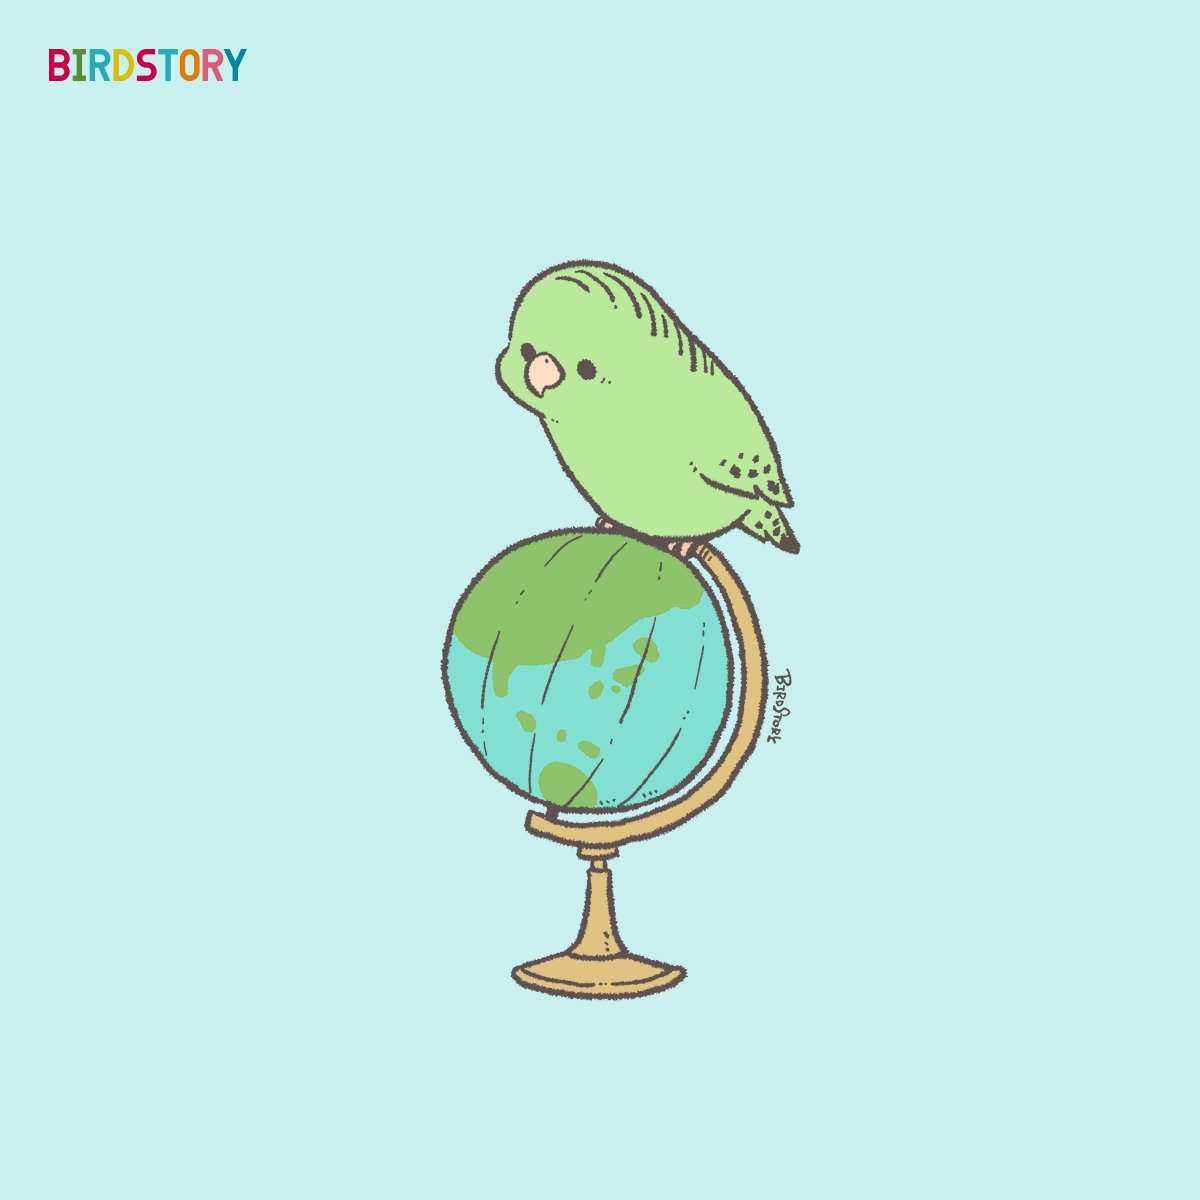 「おはようございます。 本日は12月5日、国際ボランティア・デー Internat」|BIRDSTORYのイラスト